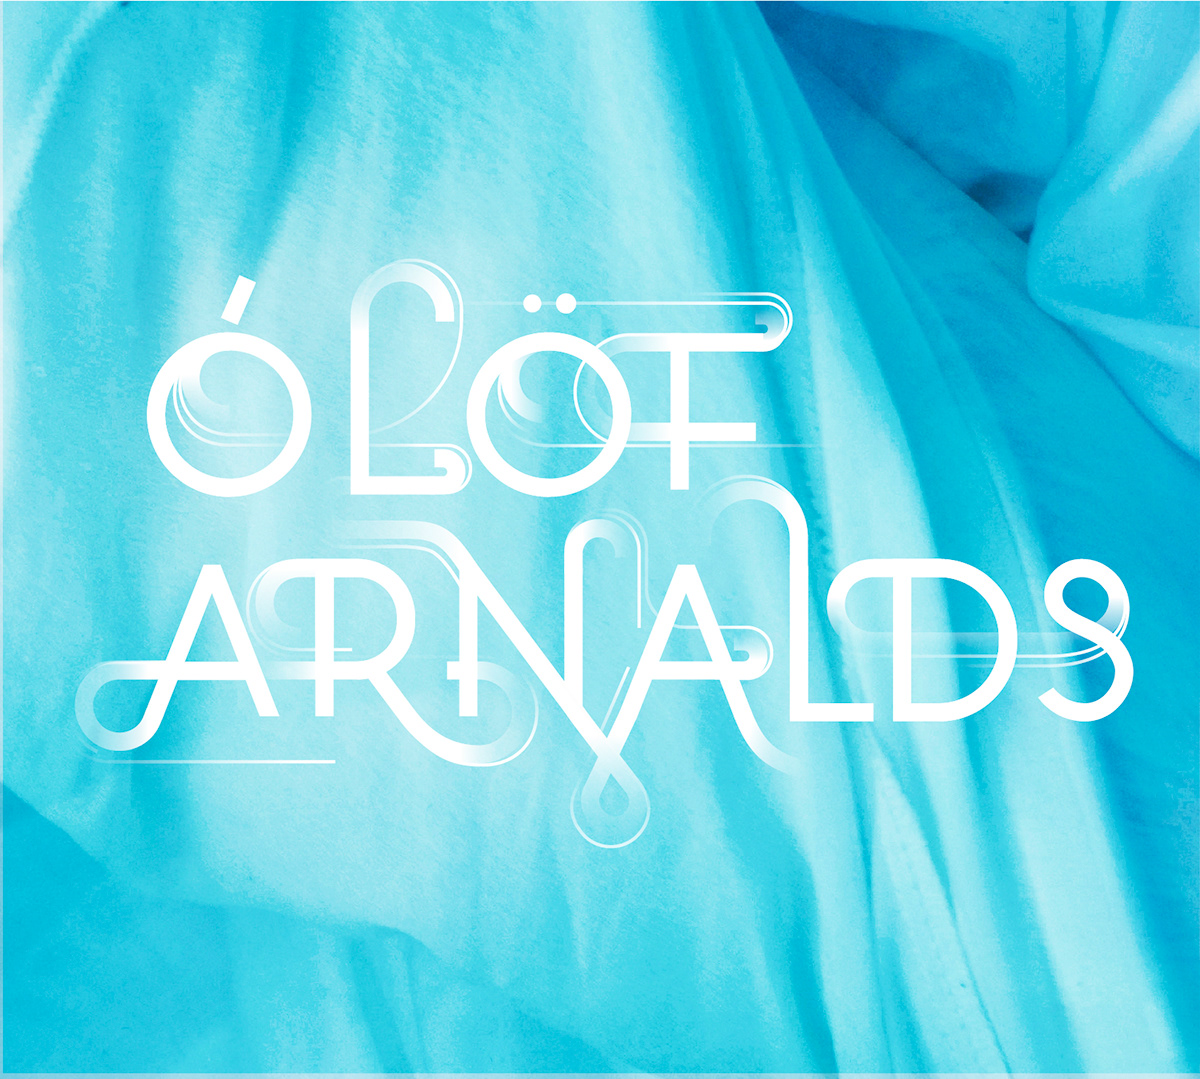 Olof Arnalds album cover album art